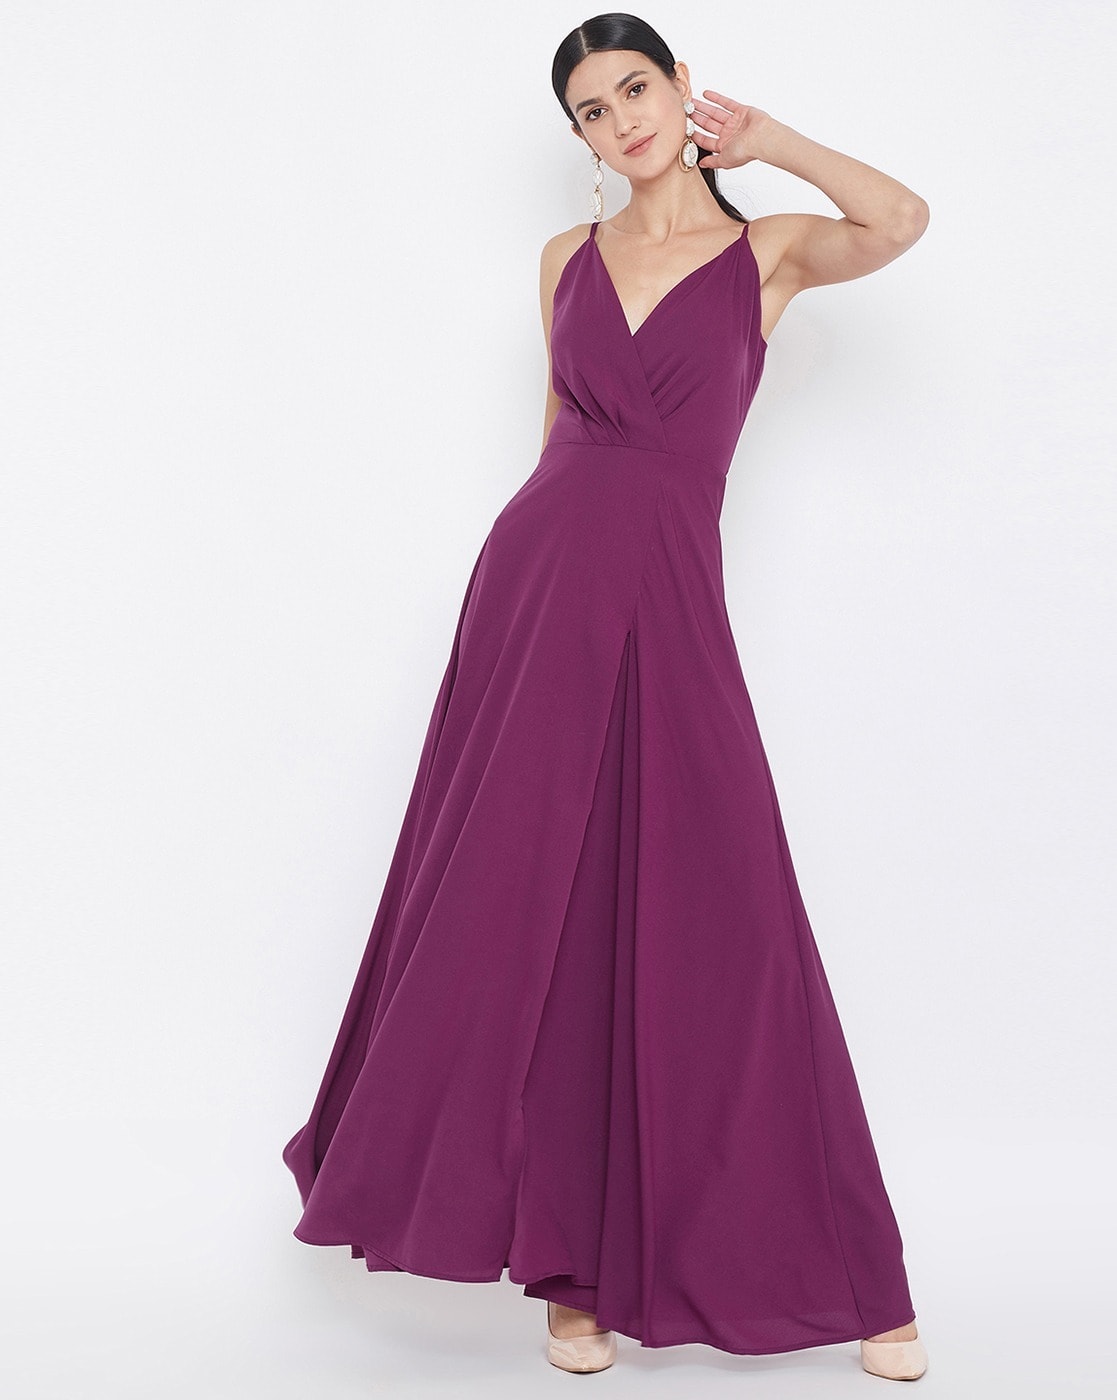 Unique Purple Black Ball Gown Wedding Dress OCTOBER | Black ball gown,  Purple wedding dress, Evening dresses long